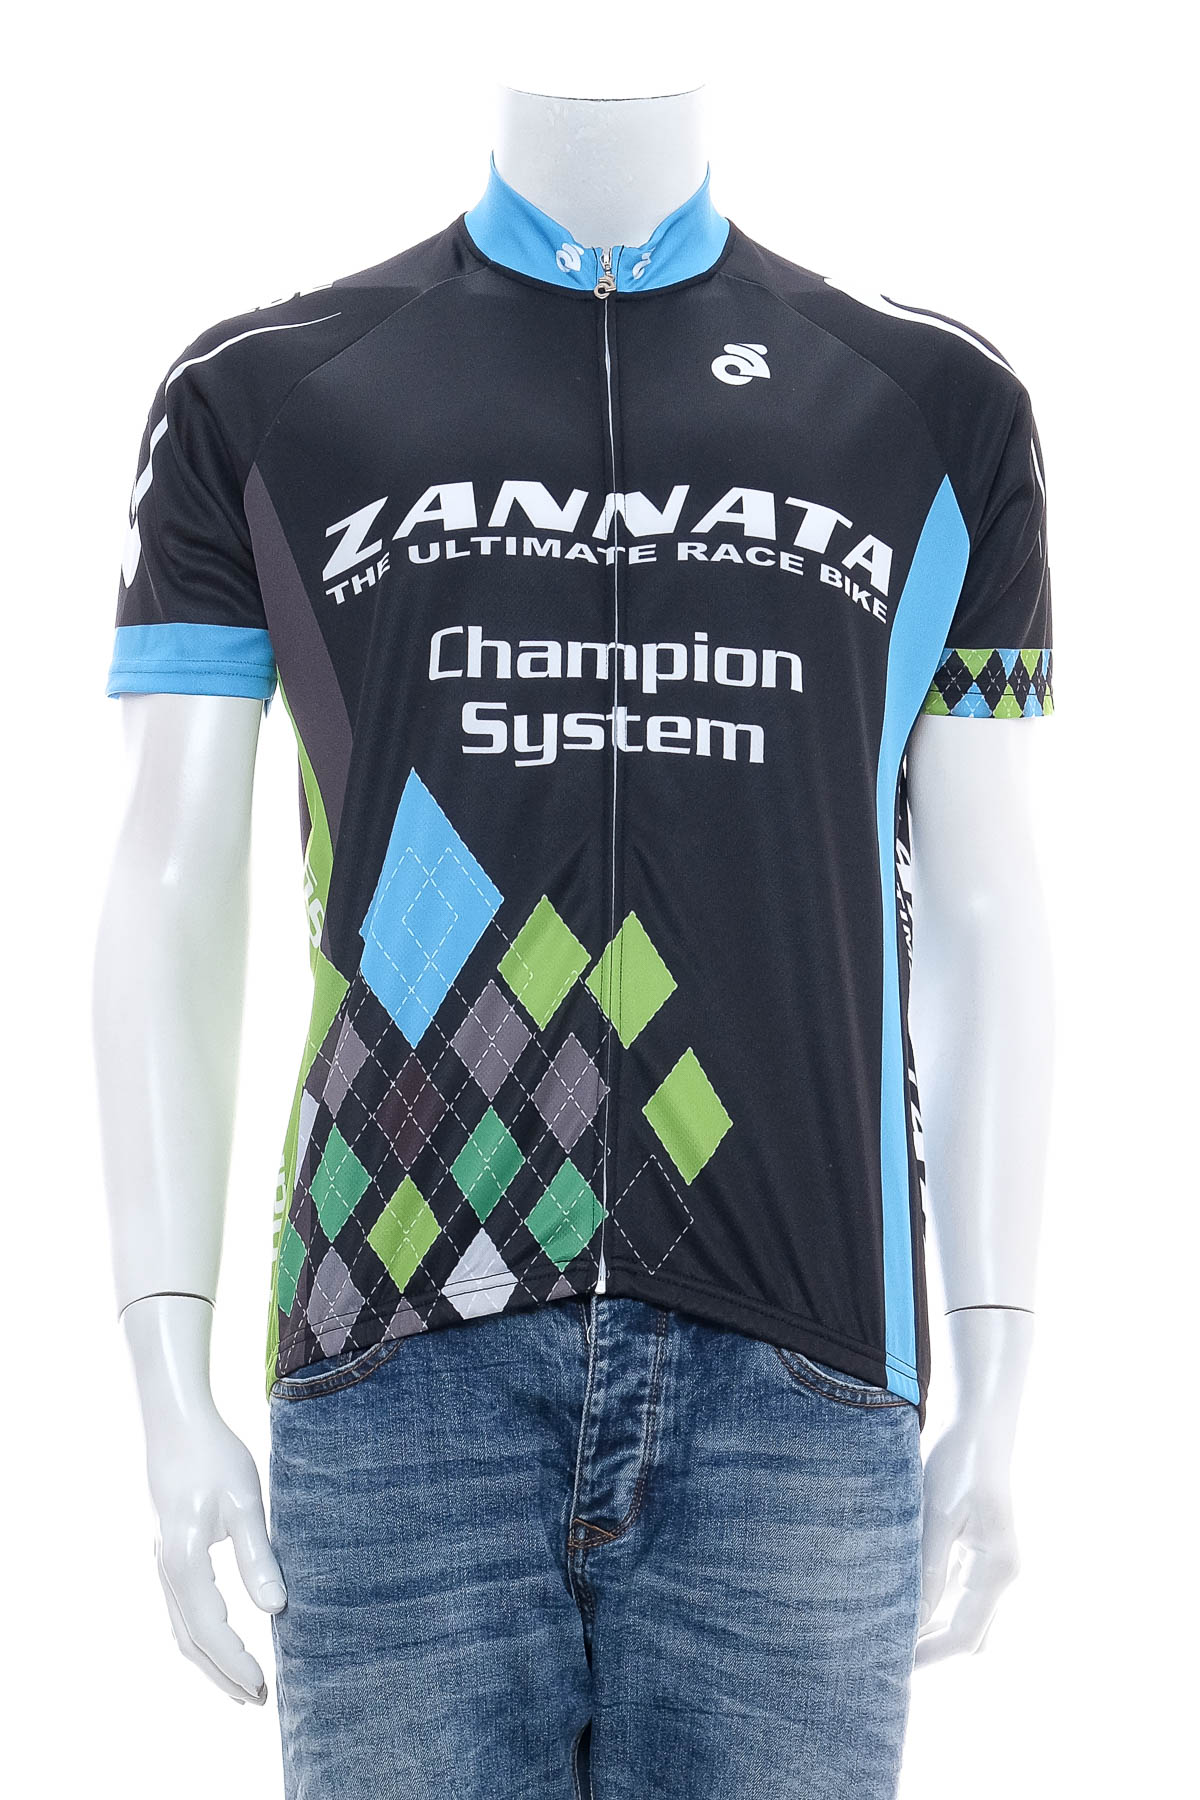 Tricou de sport bărbați pentru bicicletă - Champion System - 0